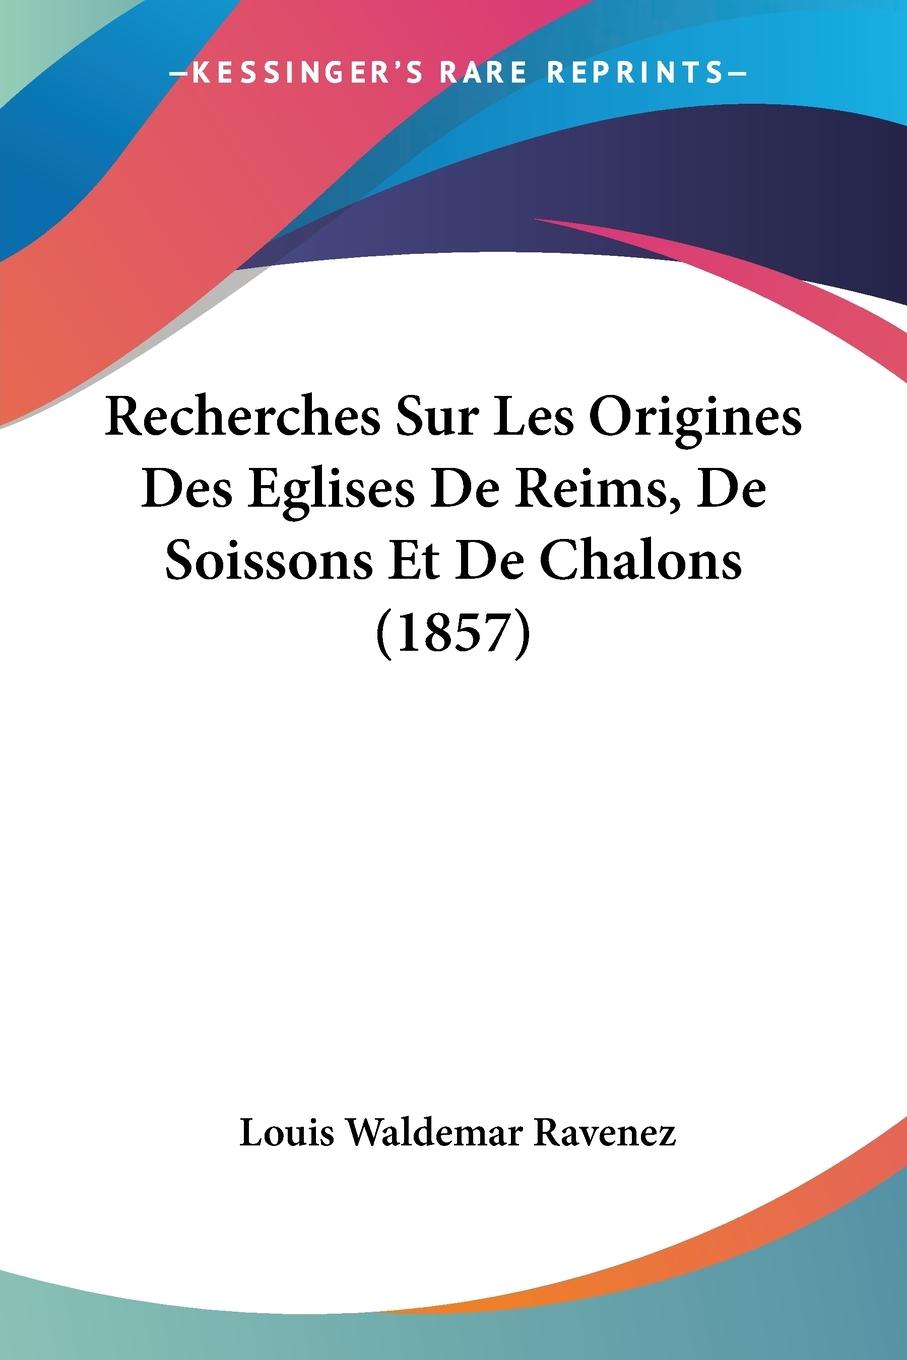 Recherches Sur Les Origines Des Eglises De Reims, De Soissons Et De Chalons (1857) - Ravenez, Louis Waldemar